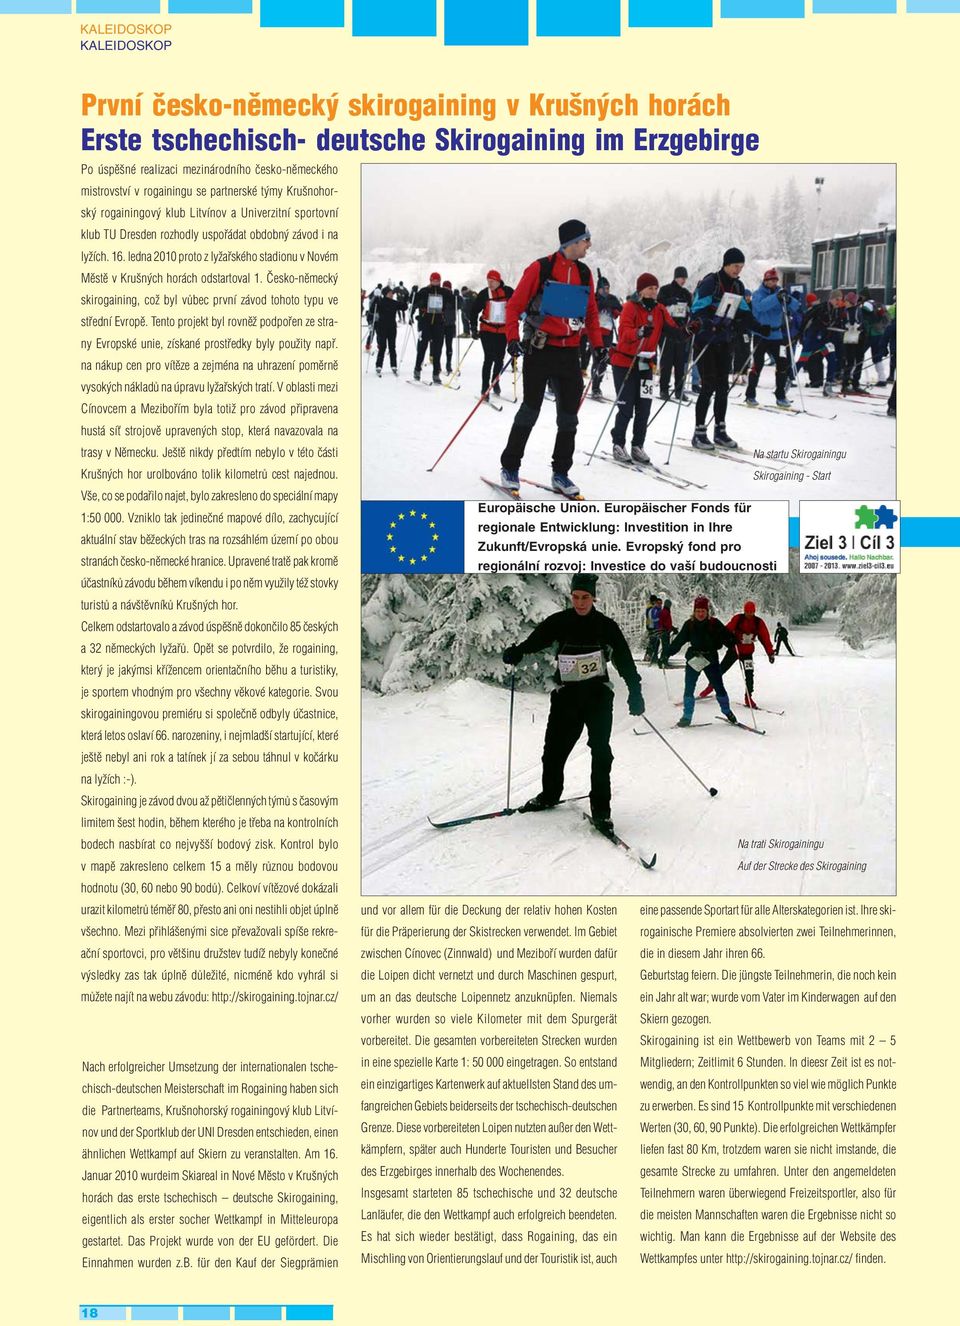 ledna 2010 proto z lyžařského stadionu v Novém Městě v Krušných horách odstartoval 1. Česko-německý skirogaining, což byl vůbec první závod tohoto typu ve střední Evropě.